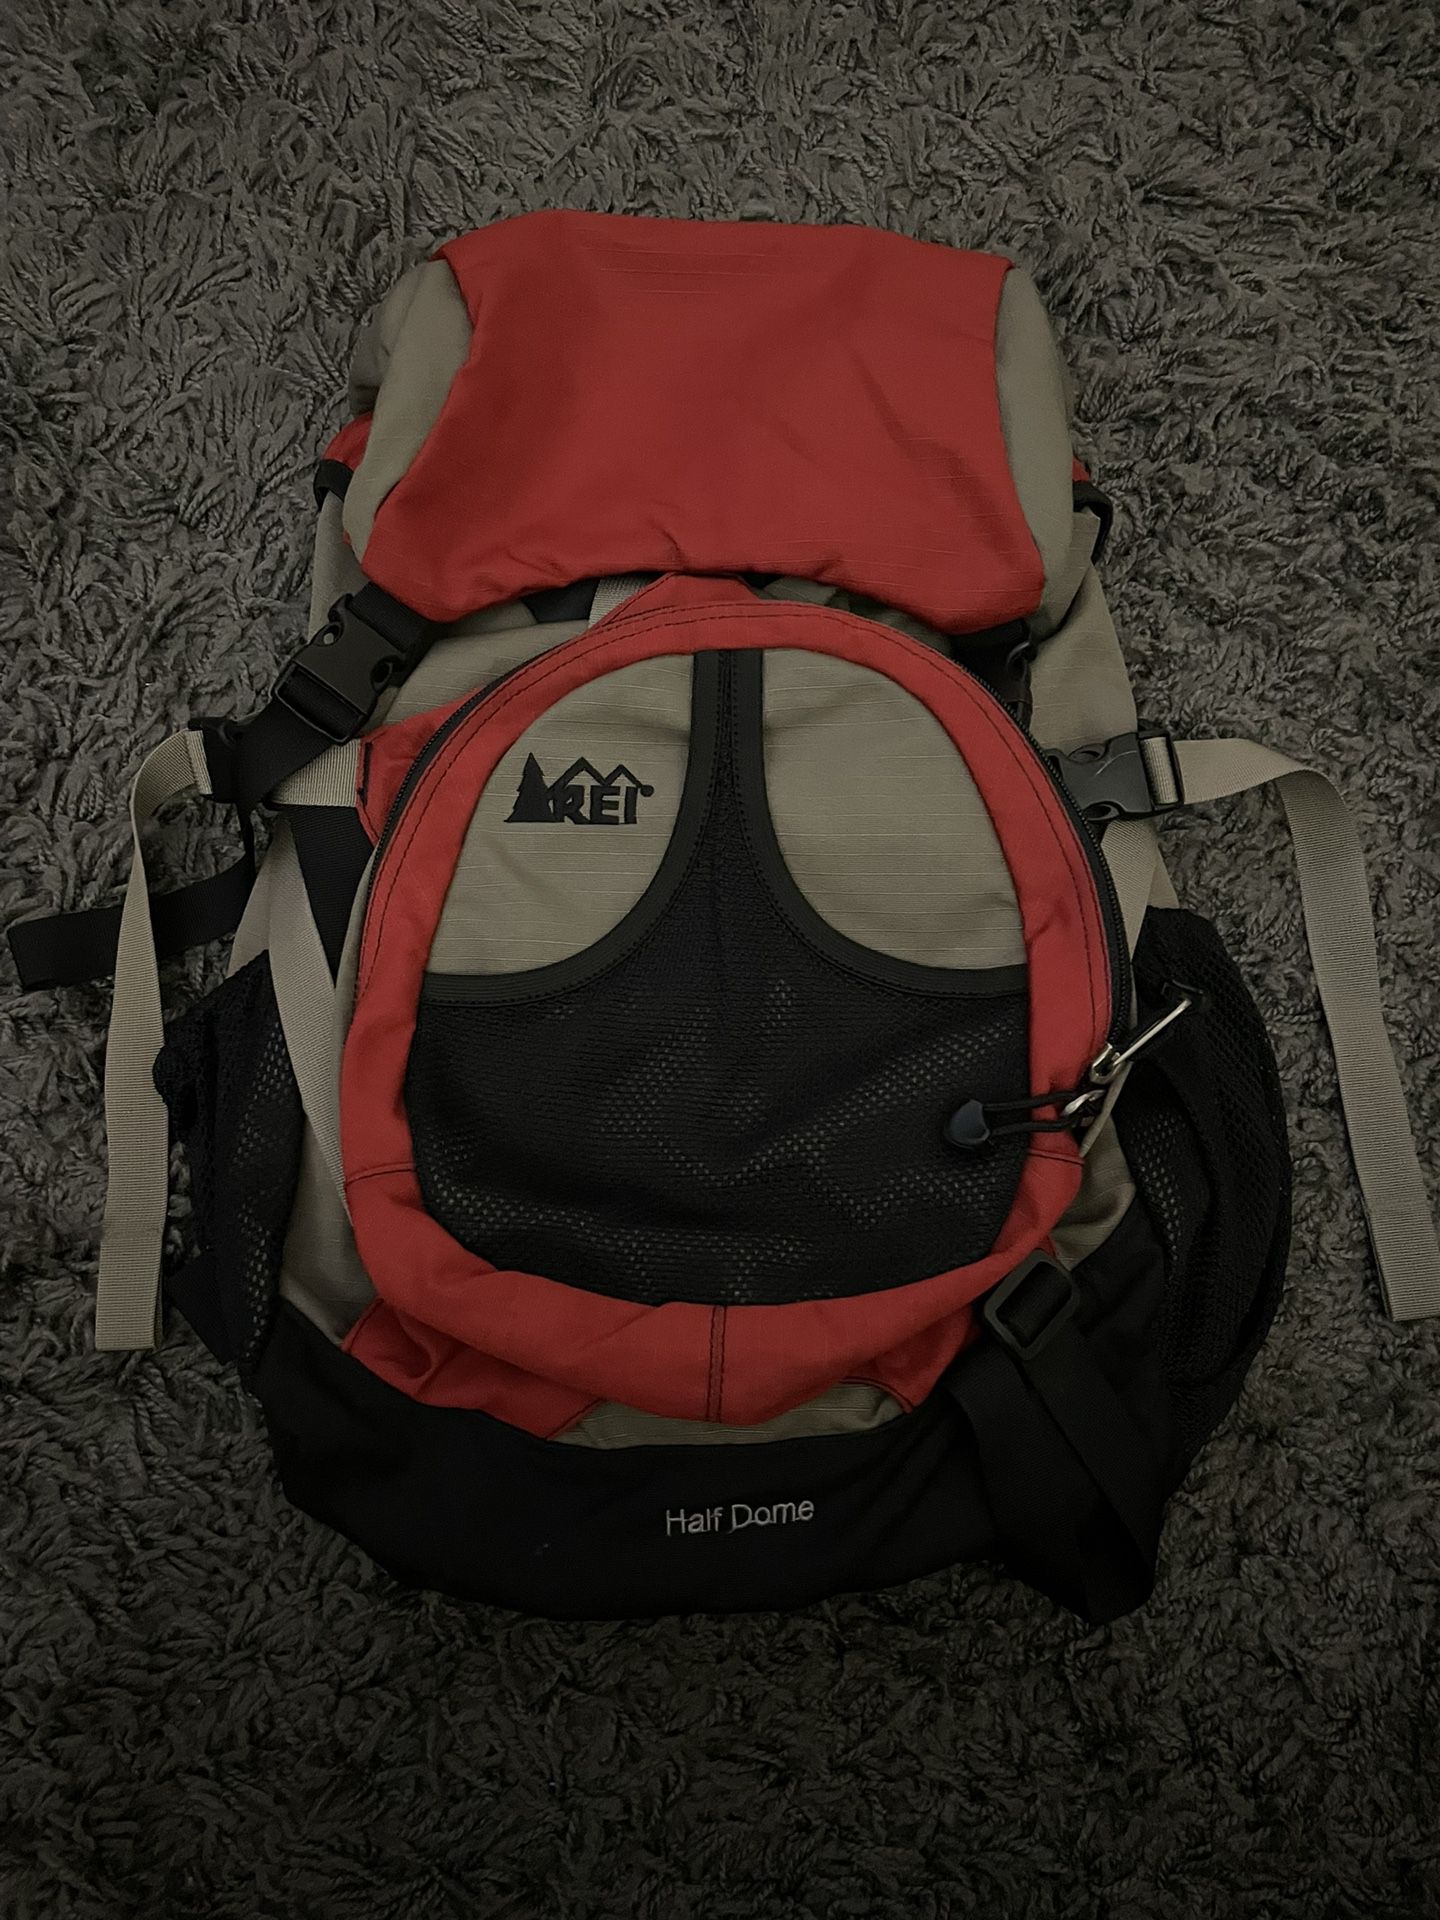 Rei Half Dome Hiking Backpack - Like New!